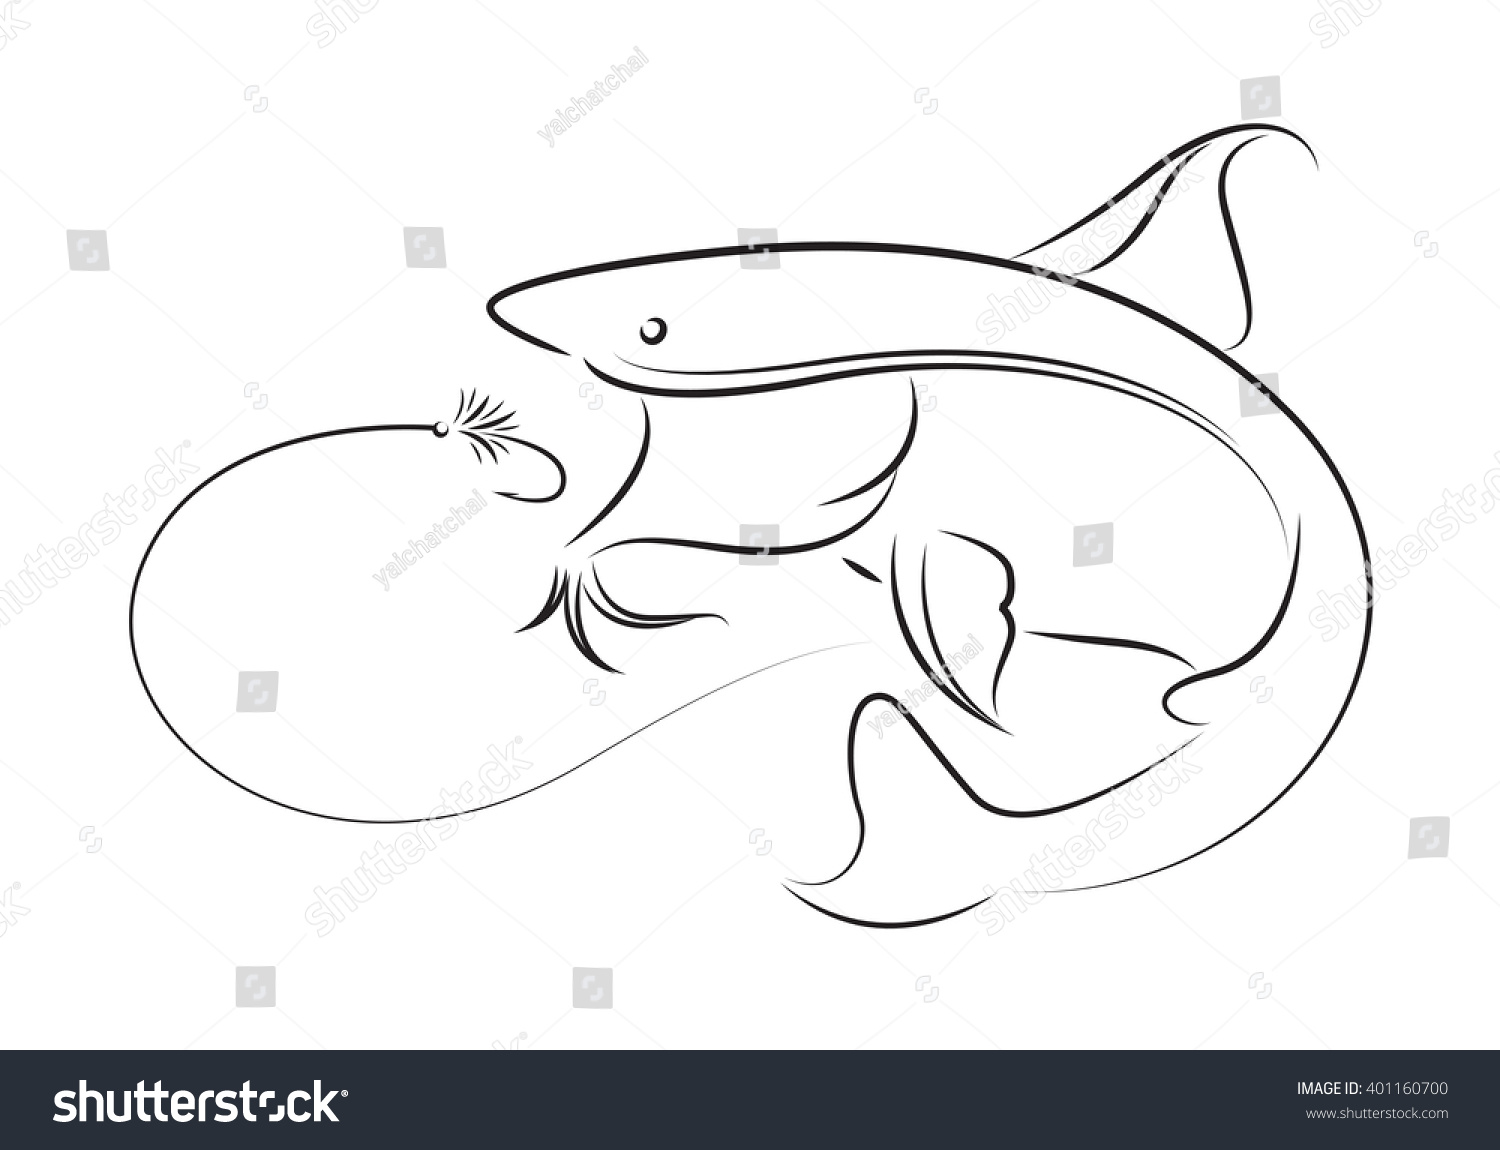 Illustration Fishing Vector Stock Vector 401160700 - Shutterstock